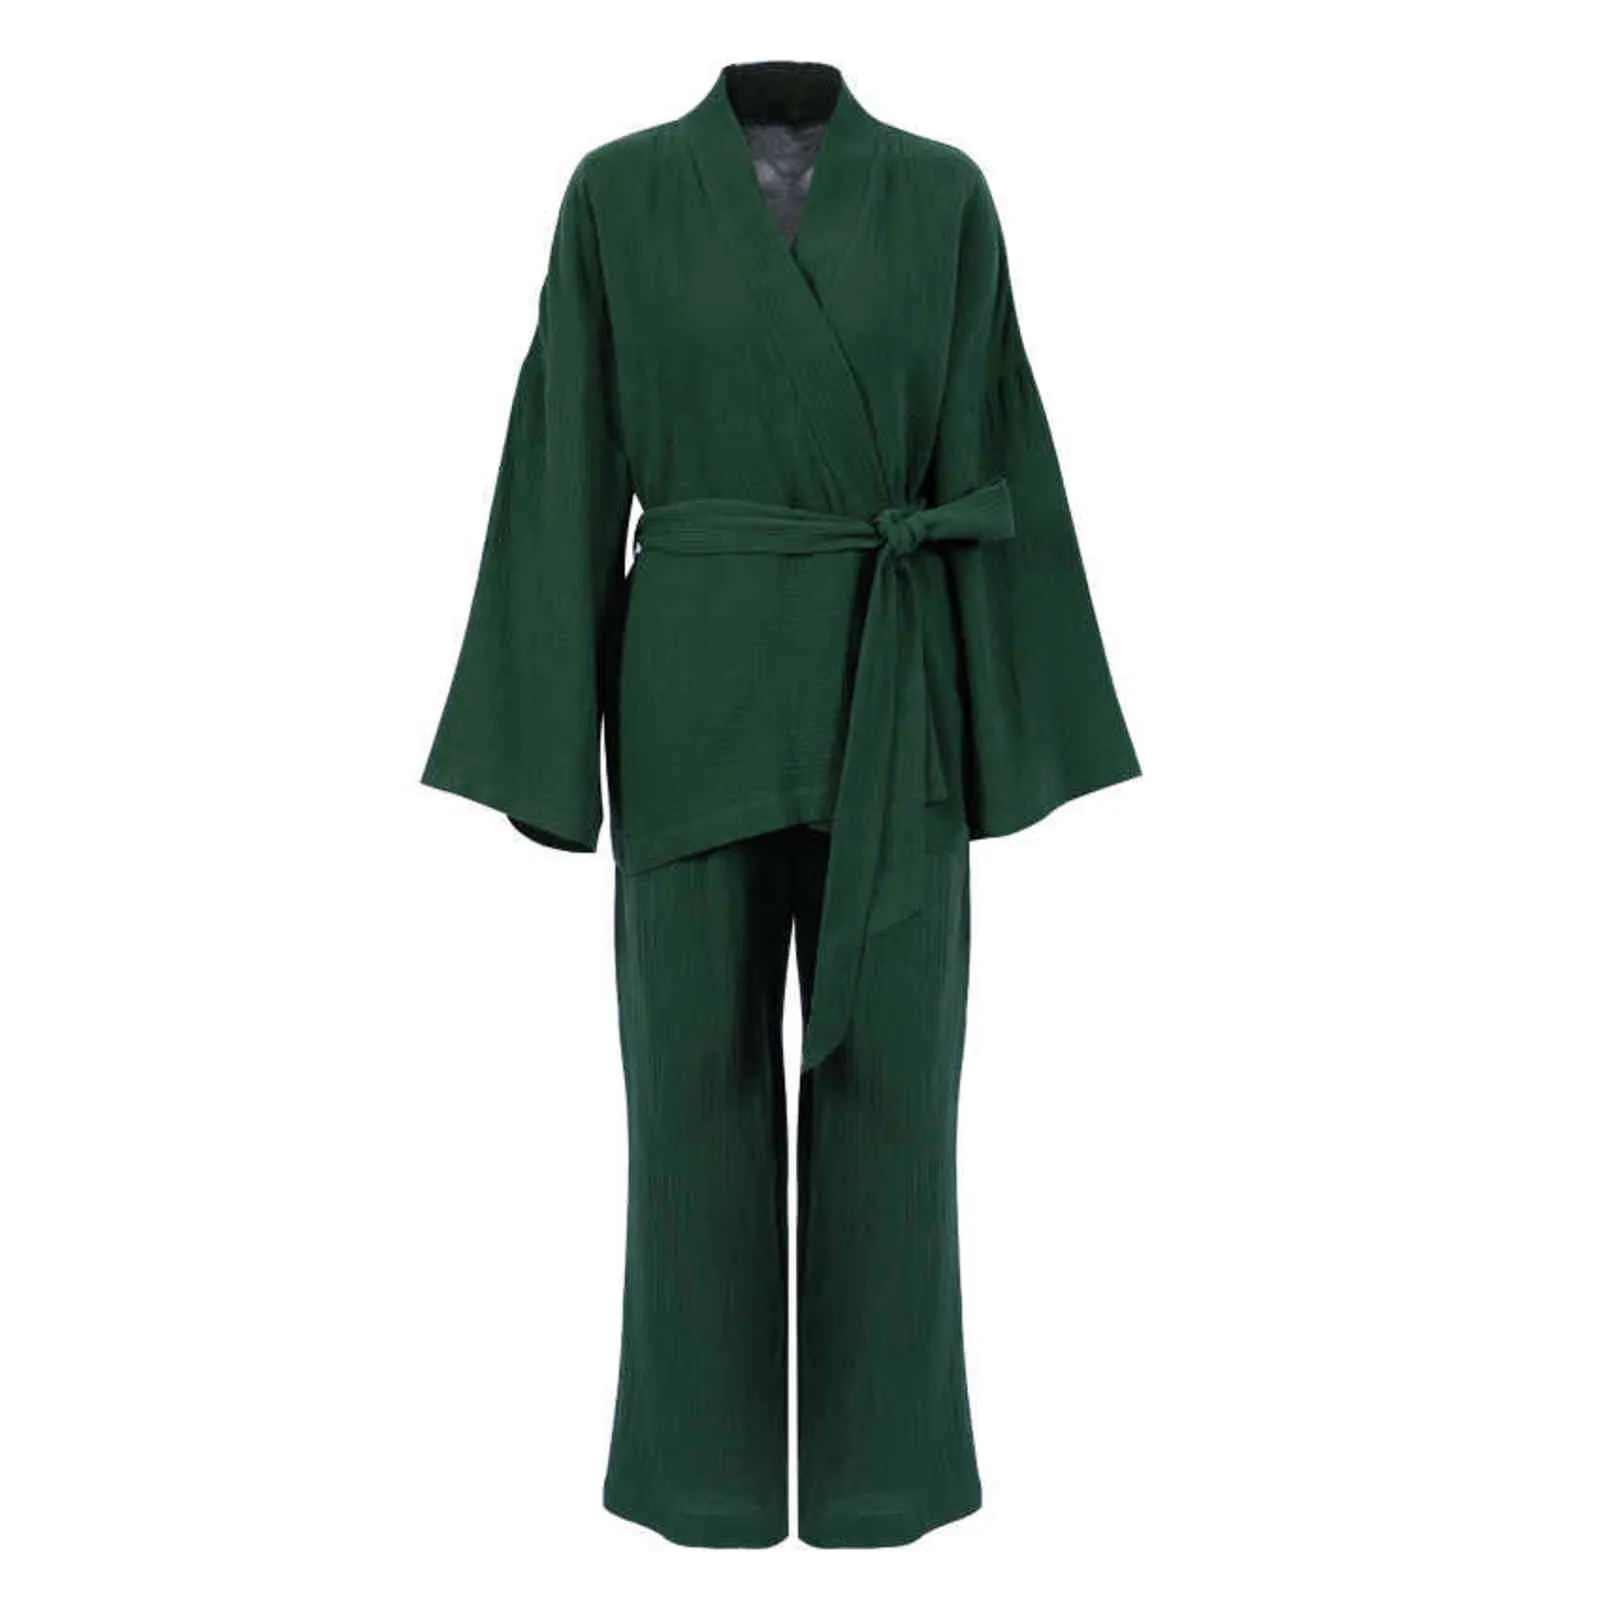 Nhkdsasa kimono pyjamas 100% coton crêpe pantalon à manches longues pour dames costumes de somnifère